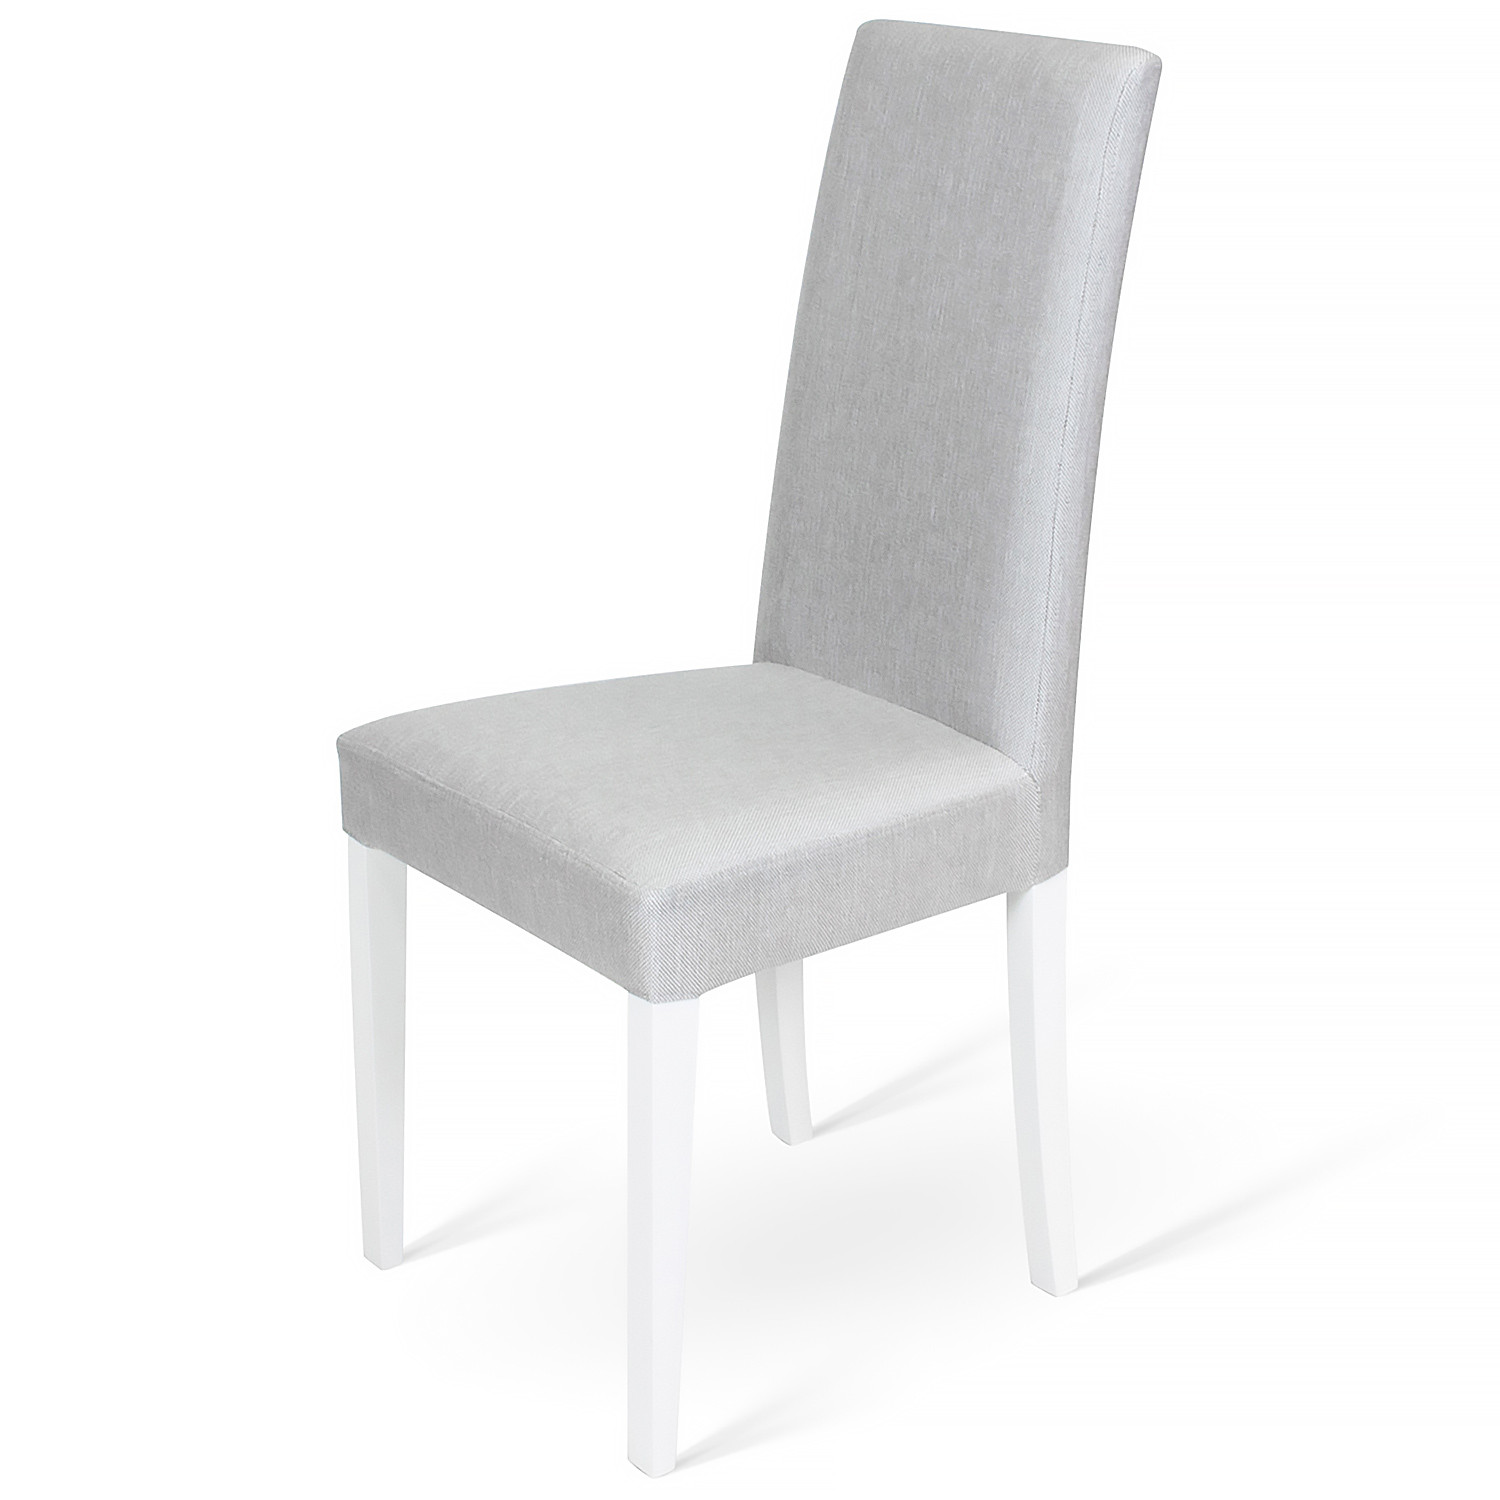 Деревянные стулья Gloria серый фото 1 — New Style of Furniture